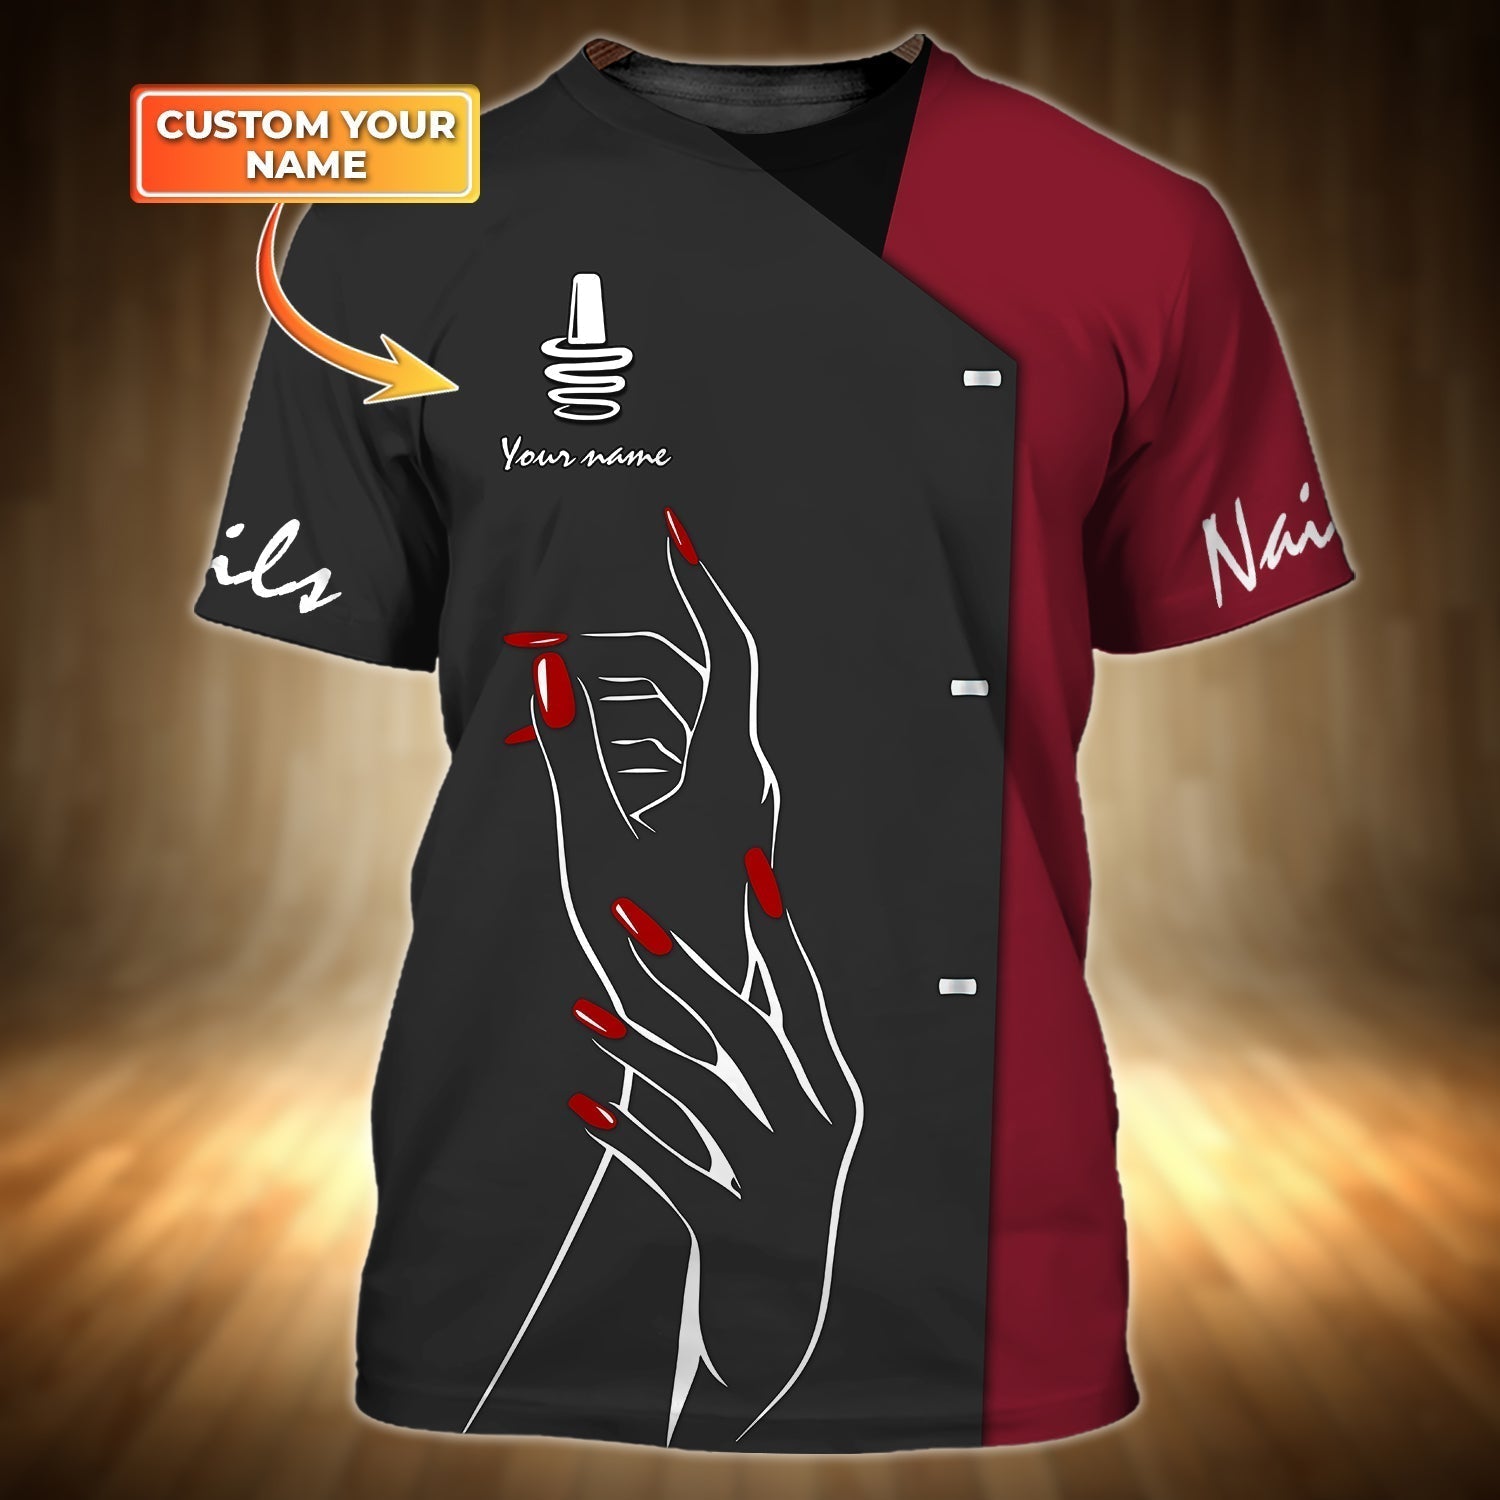 Custom Name Nail Shirt/ New Nail Technician Gifts/ Nail T Shirts